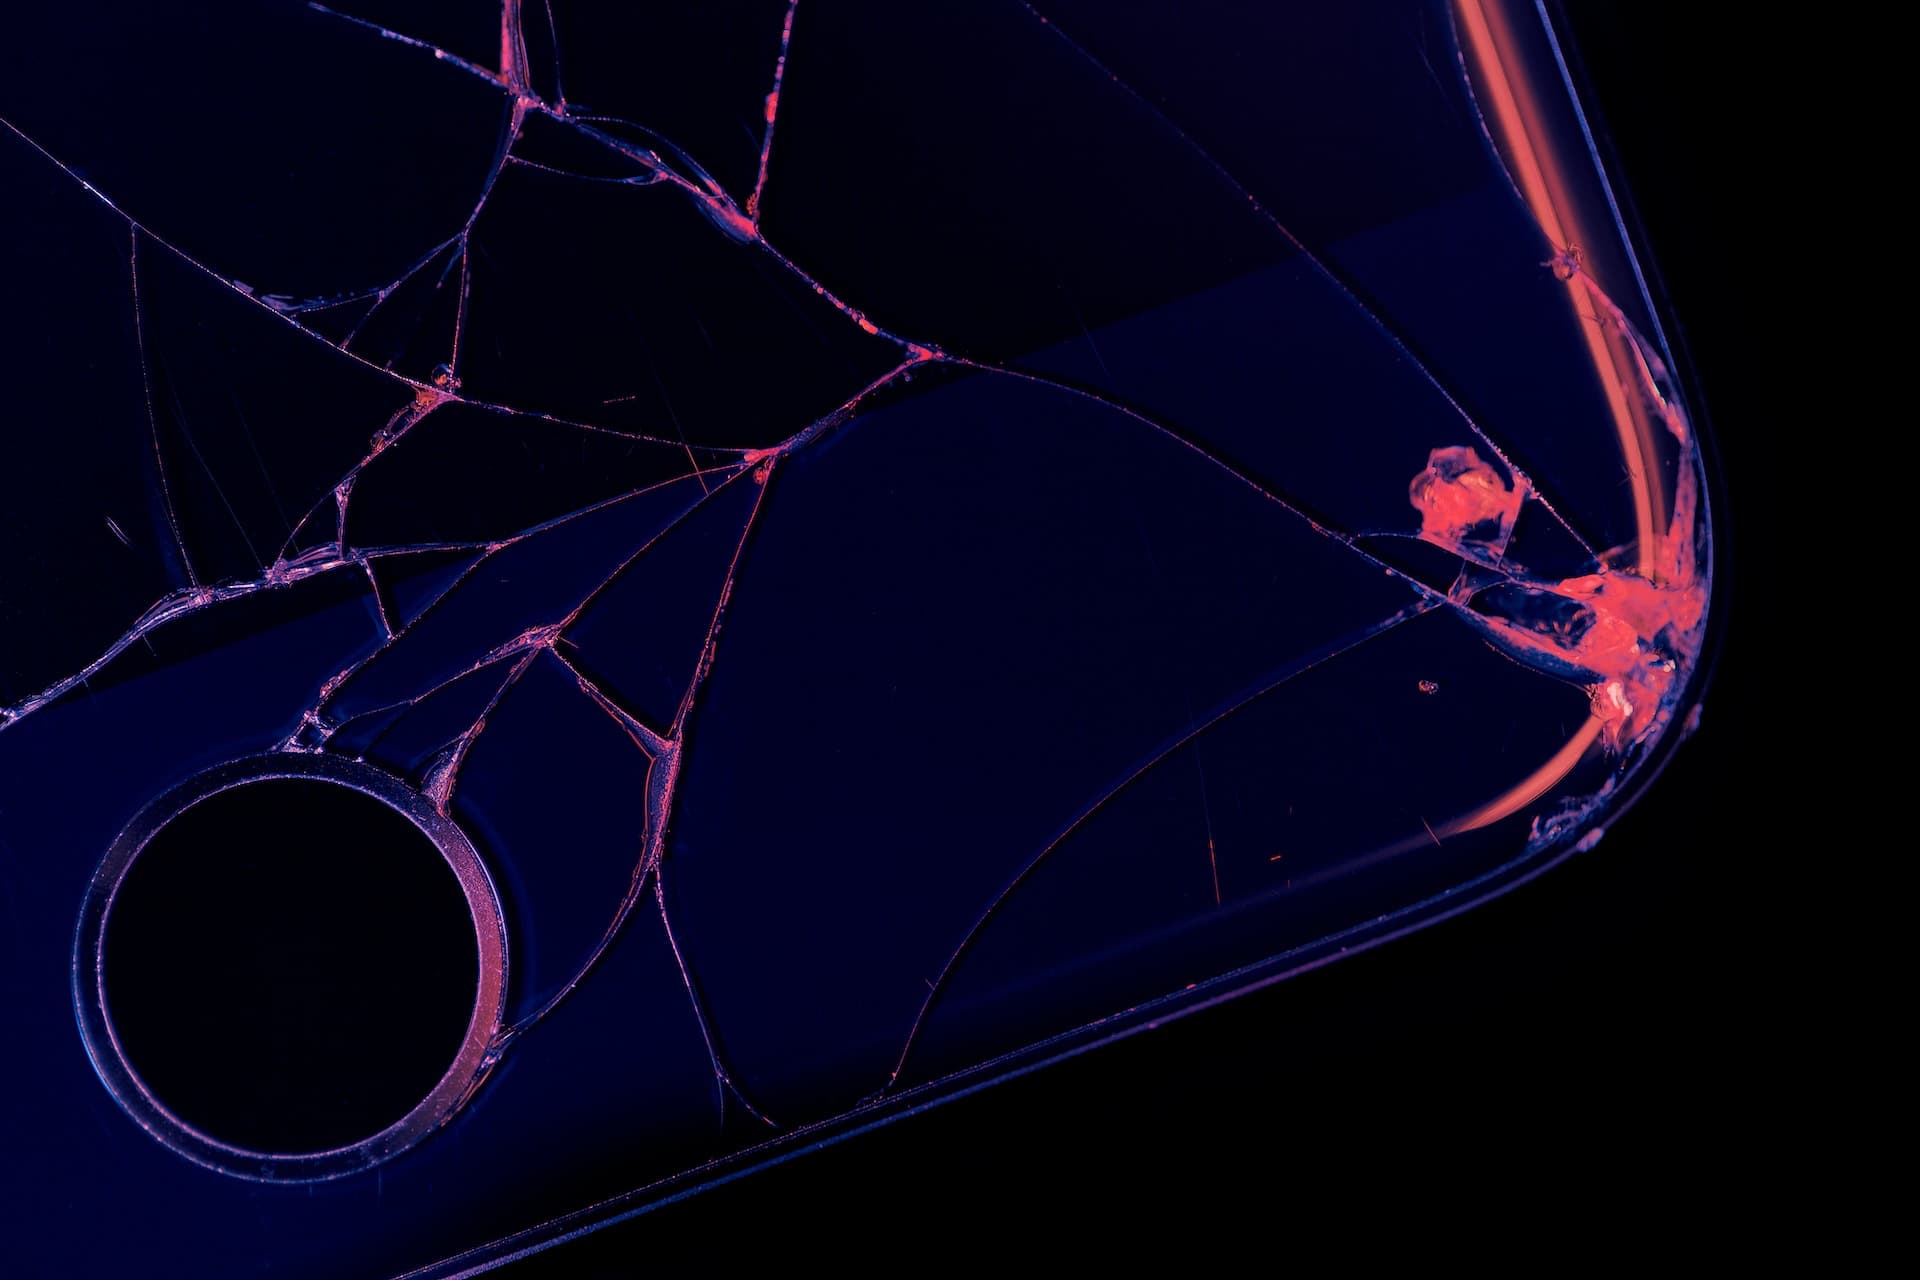 iPhone with broken screen